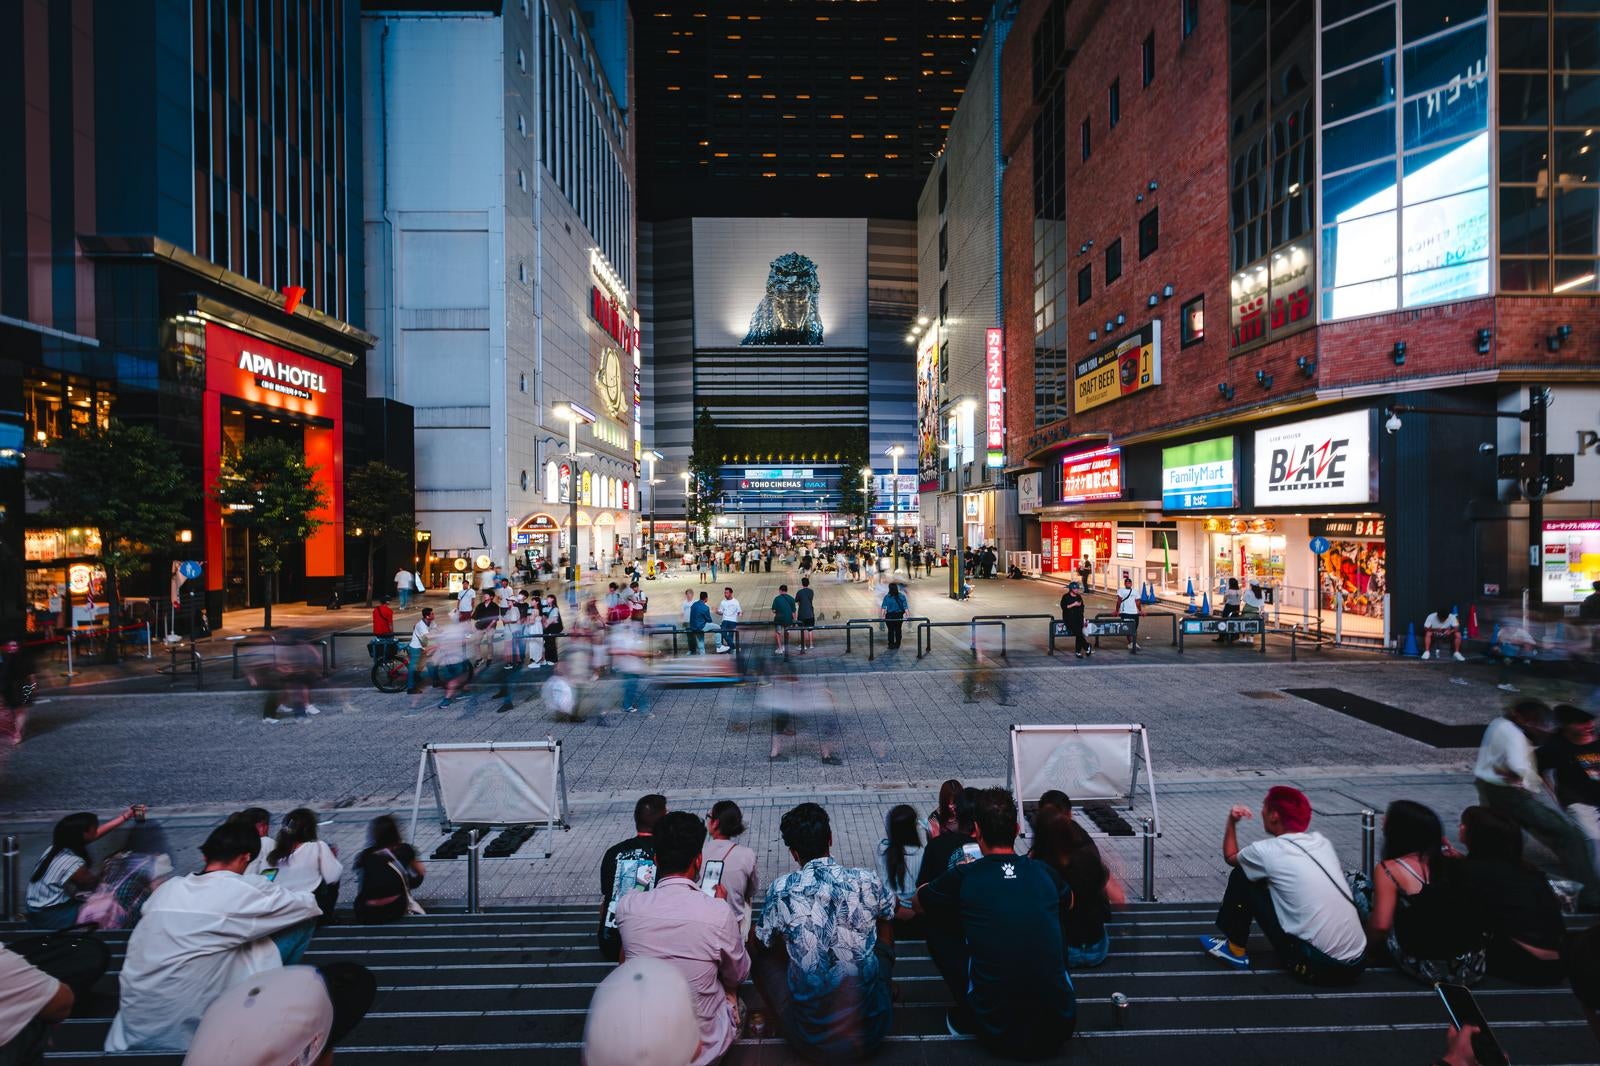 「シネシティ広場と東急歌舞伎町タワー前の様子（夜間）」の写真